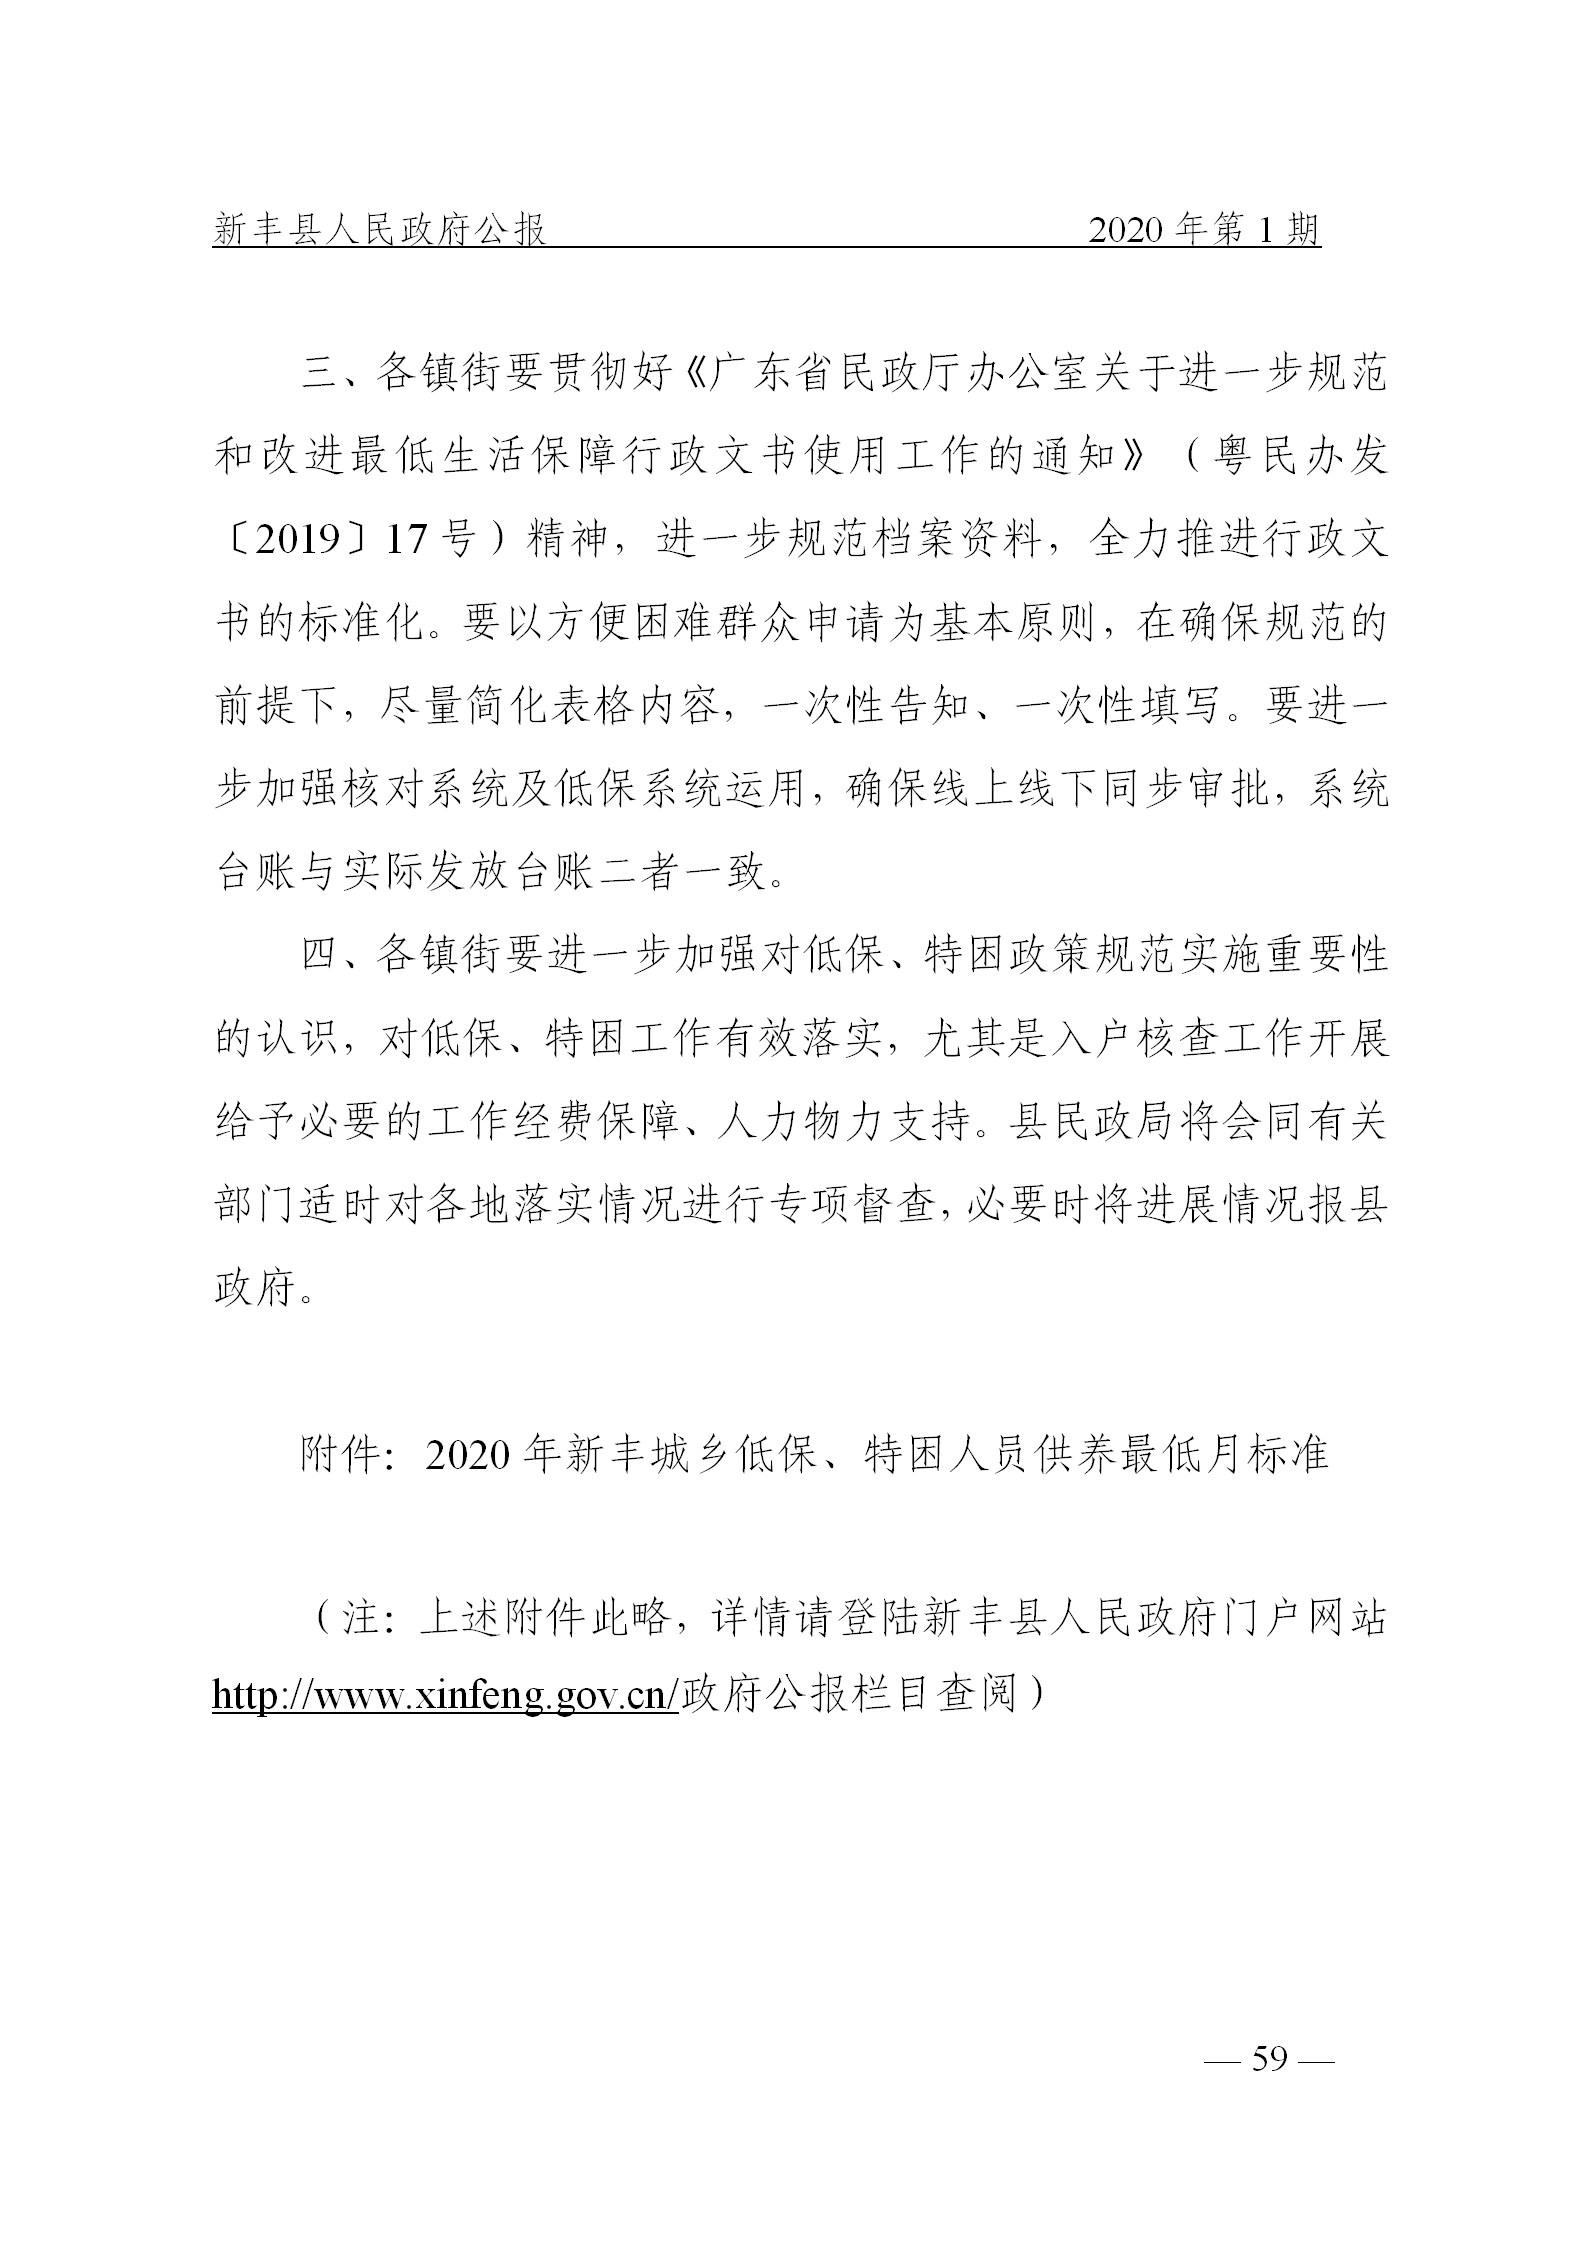 《新丰县人民政府公报》2020年第1期(1)_59.png